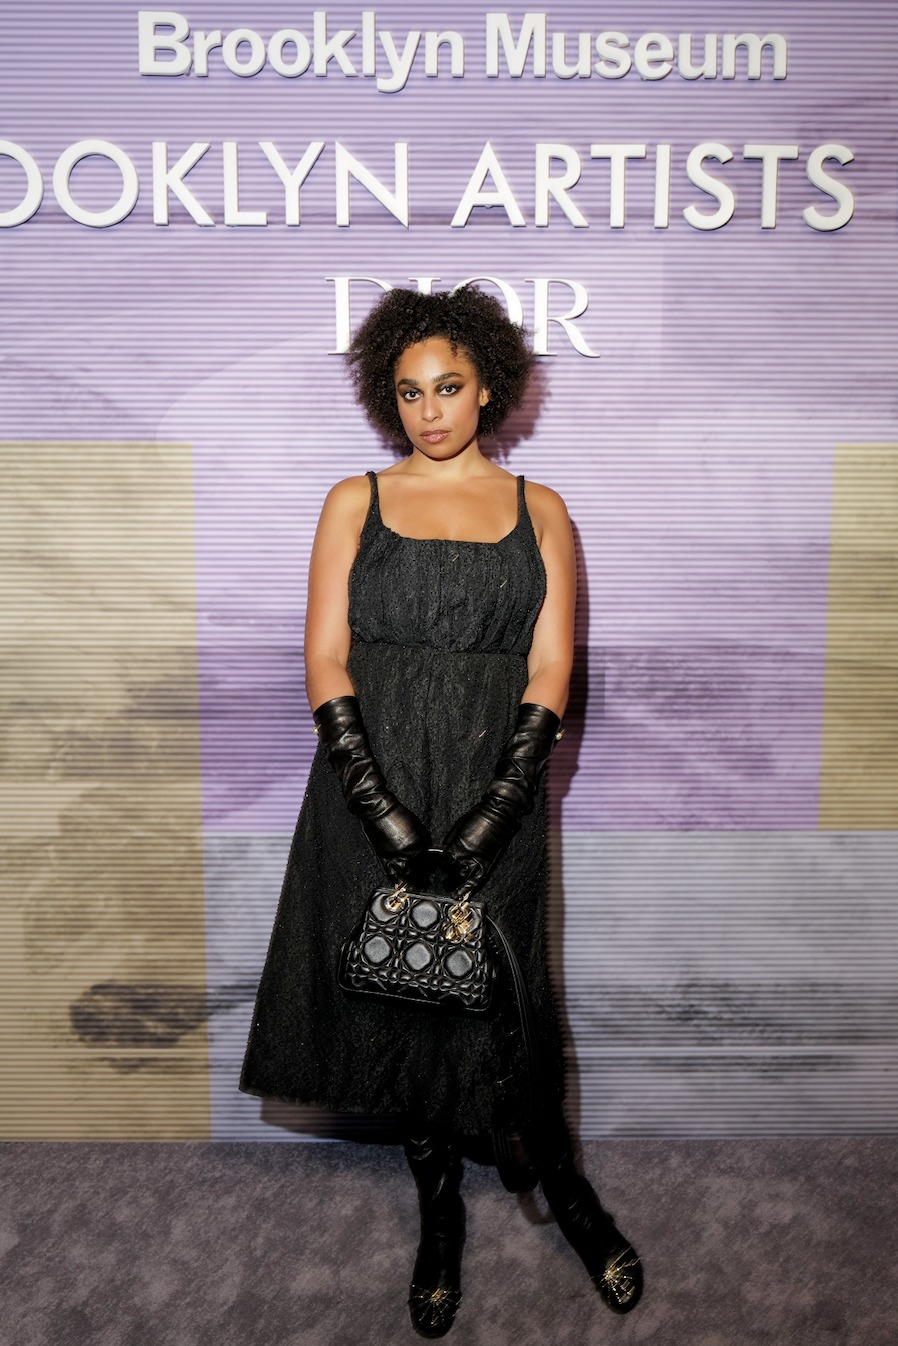 В Бруклинском музее при поддержке Dior состоялся ежегодный Бал художников